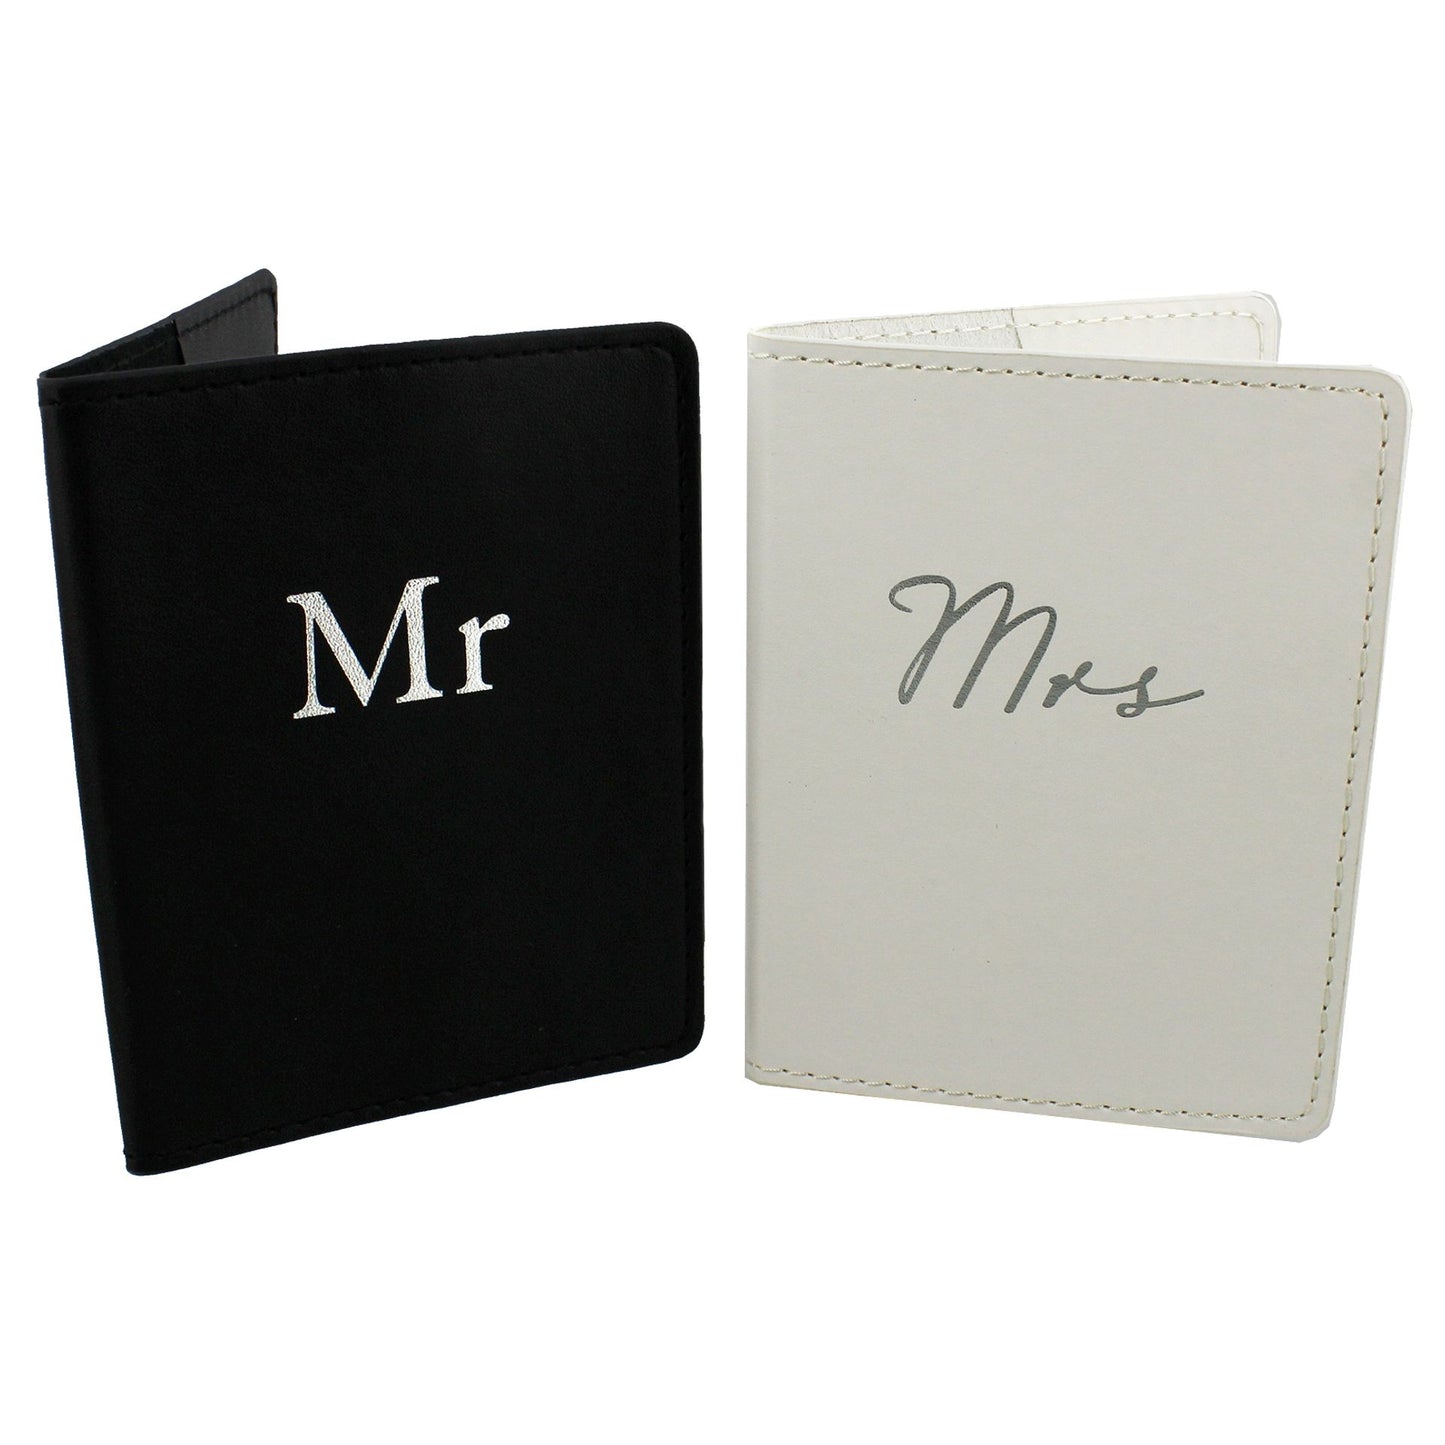 Mr & Mrs Black and White Passport Holders